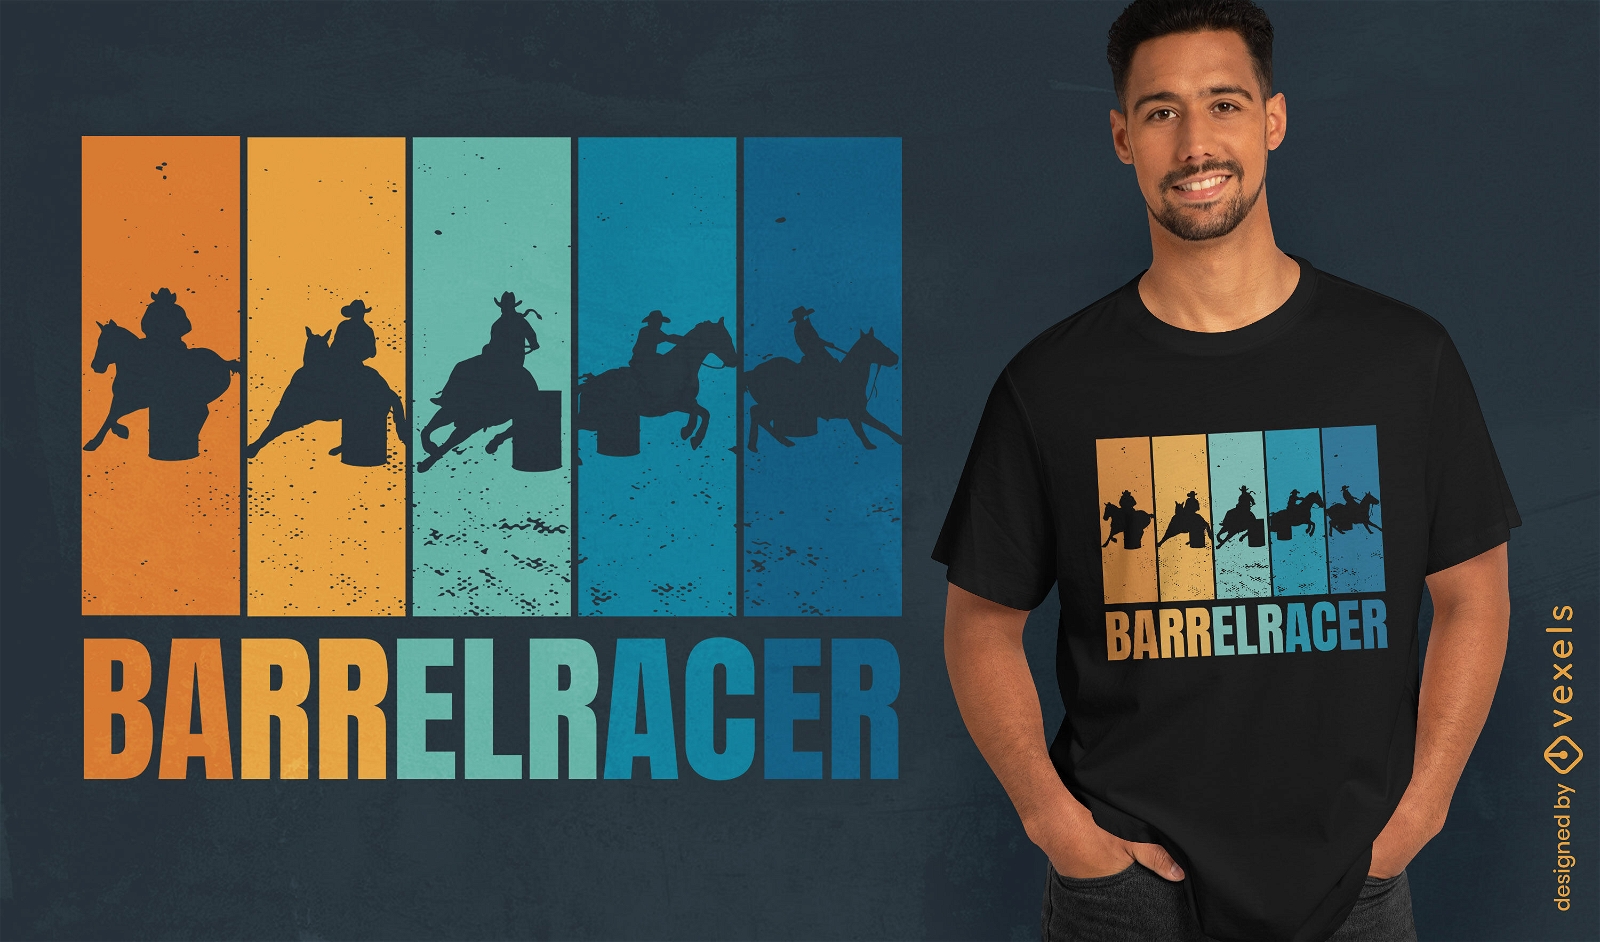 Barrel racer sport t-shirt design